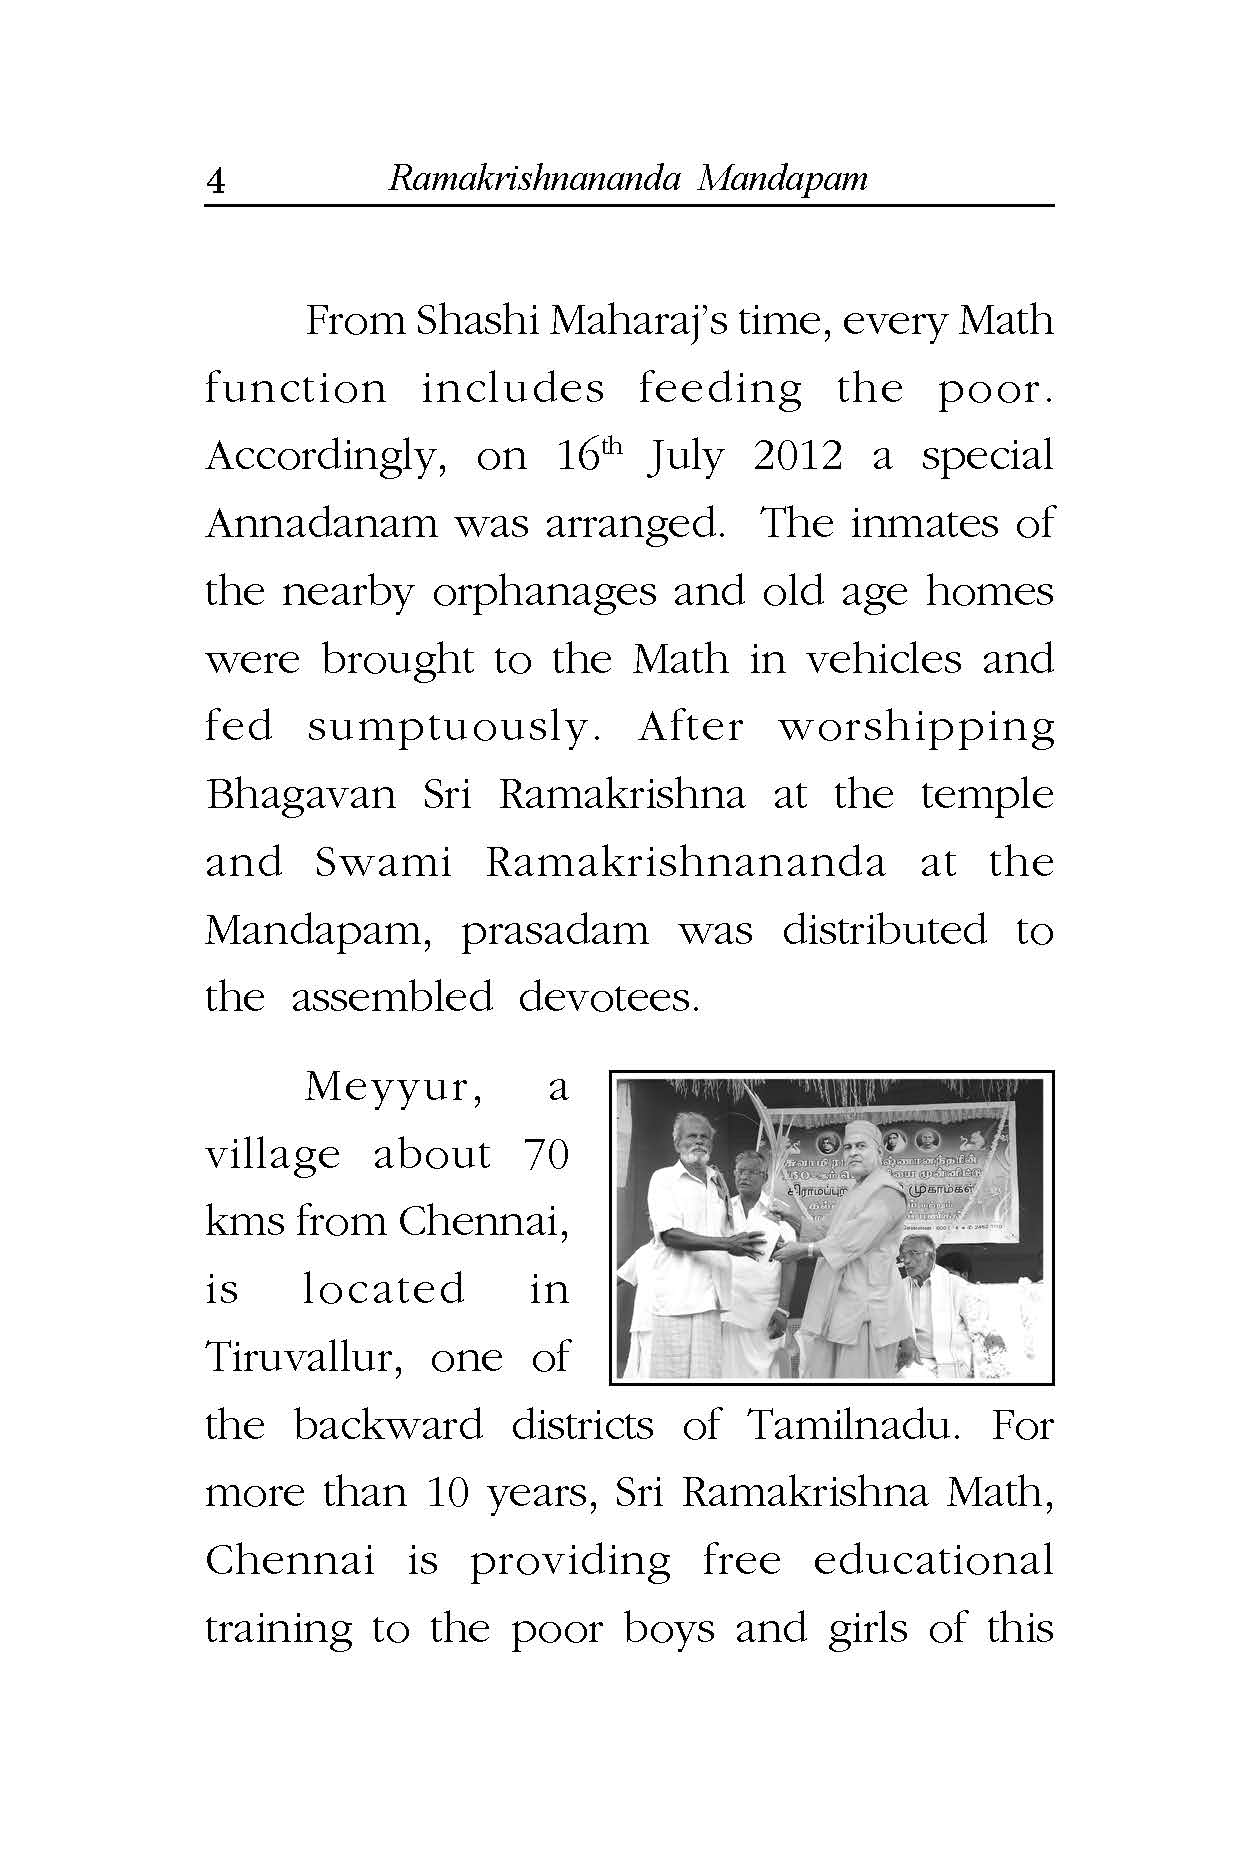 Ramakrishnananda Mandapam